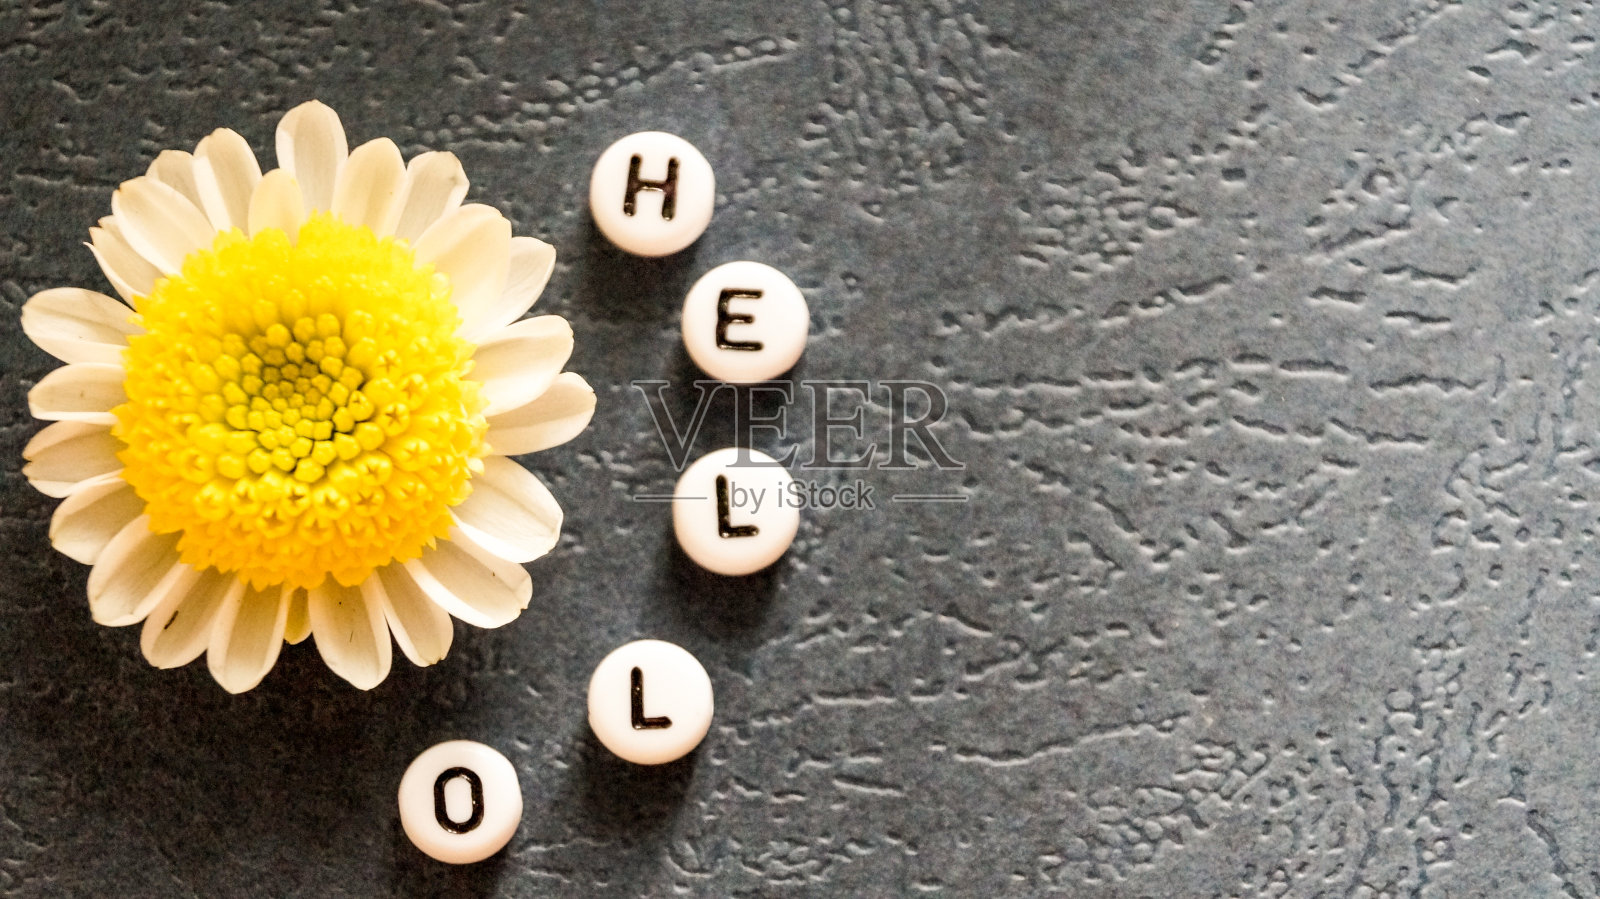 “你好”这个词是用圆块儿和甘菊拼出来的。照片摄影图片